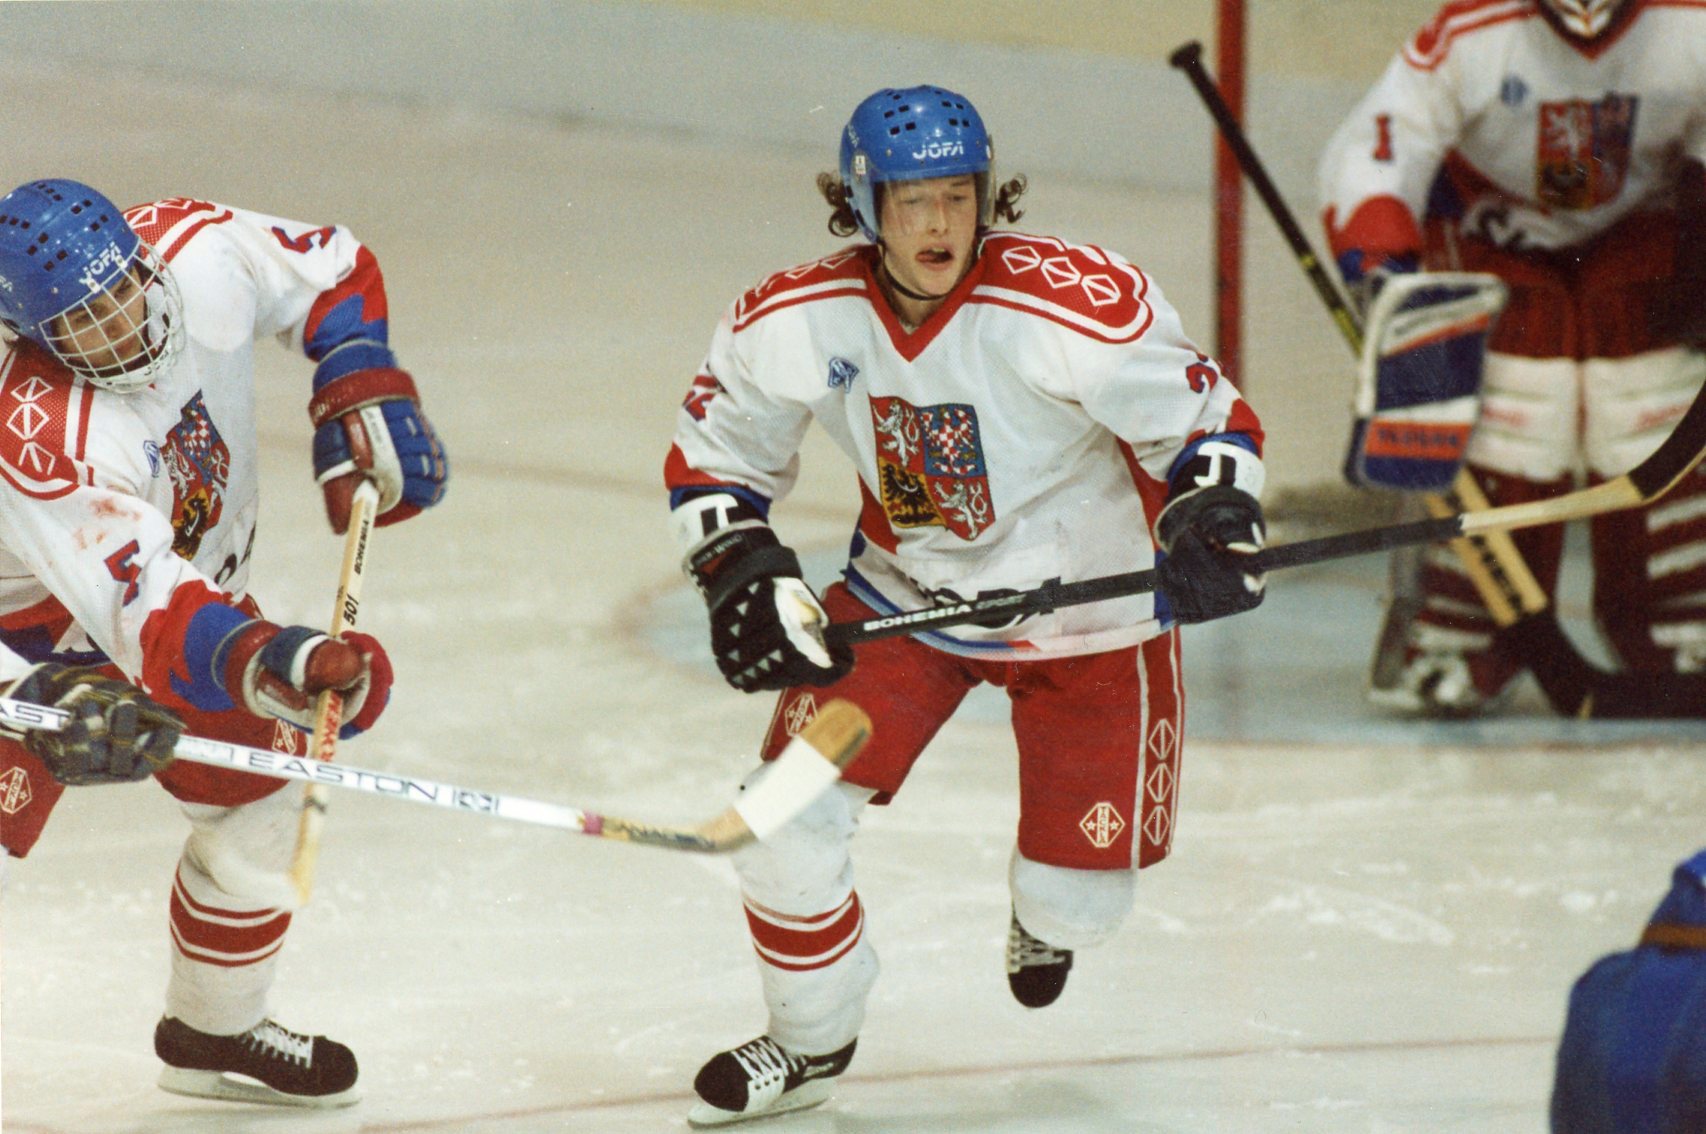 Jaca 1981 Ice hockey